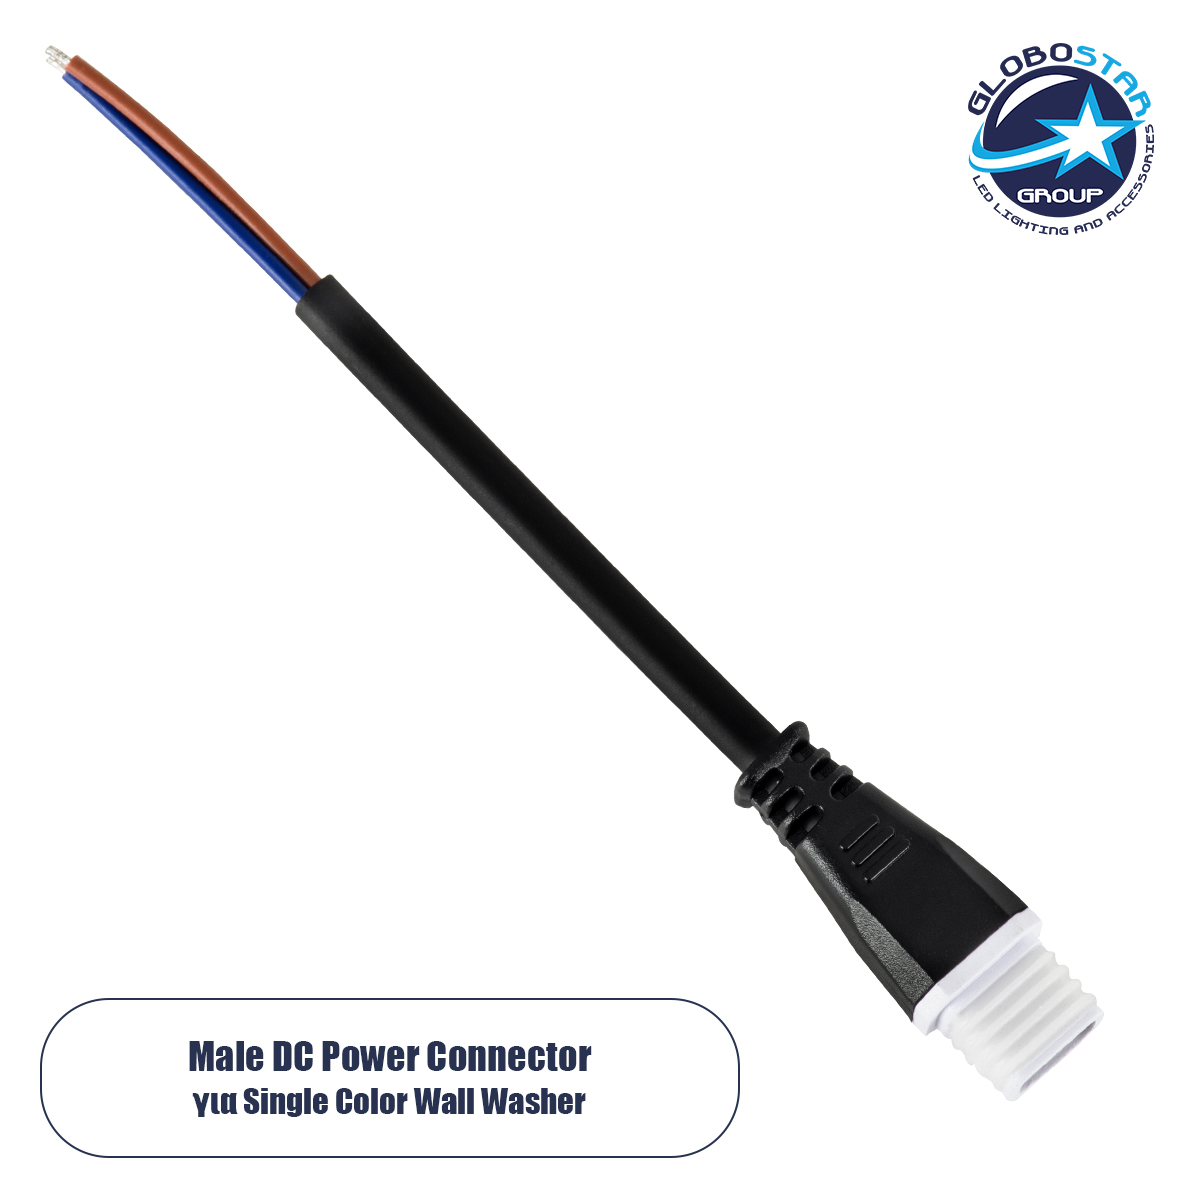 GloboStar® 90703 Ταχυσύνδεσμος Τροφοδοσίας για Wall Washer IP65 – 2 Καλώδια +/- σε Power Connector 2 PIN Male για Μονόχρωμα Wall Washer